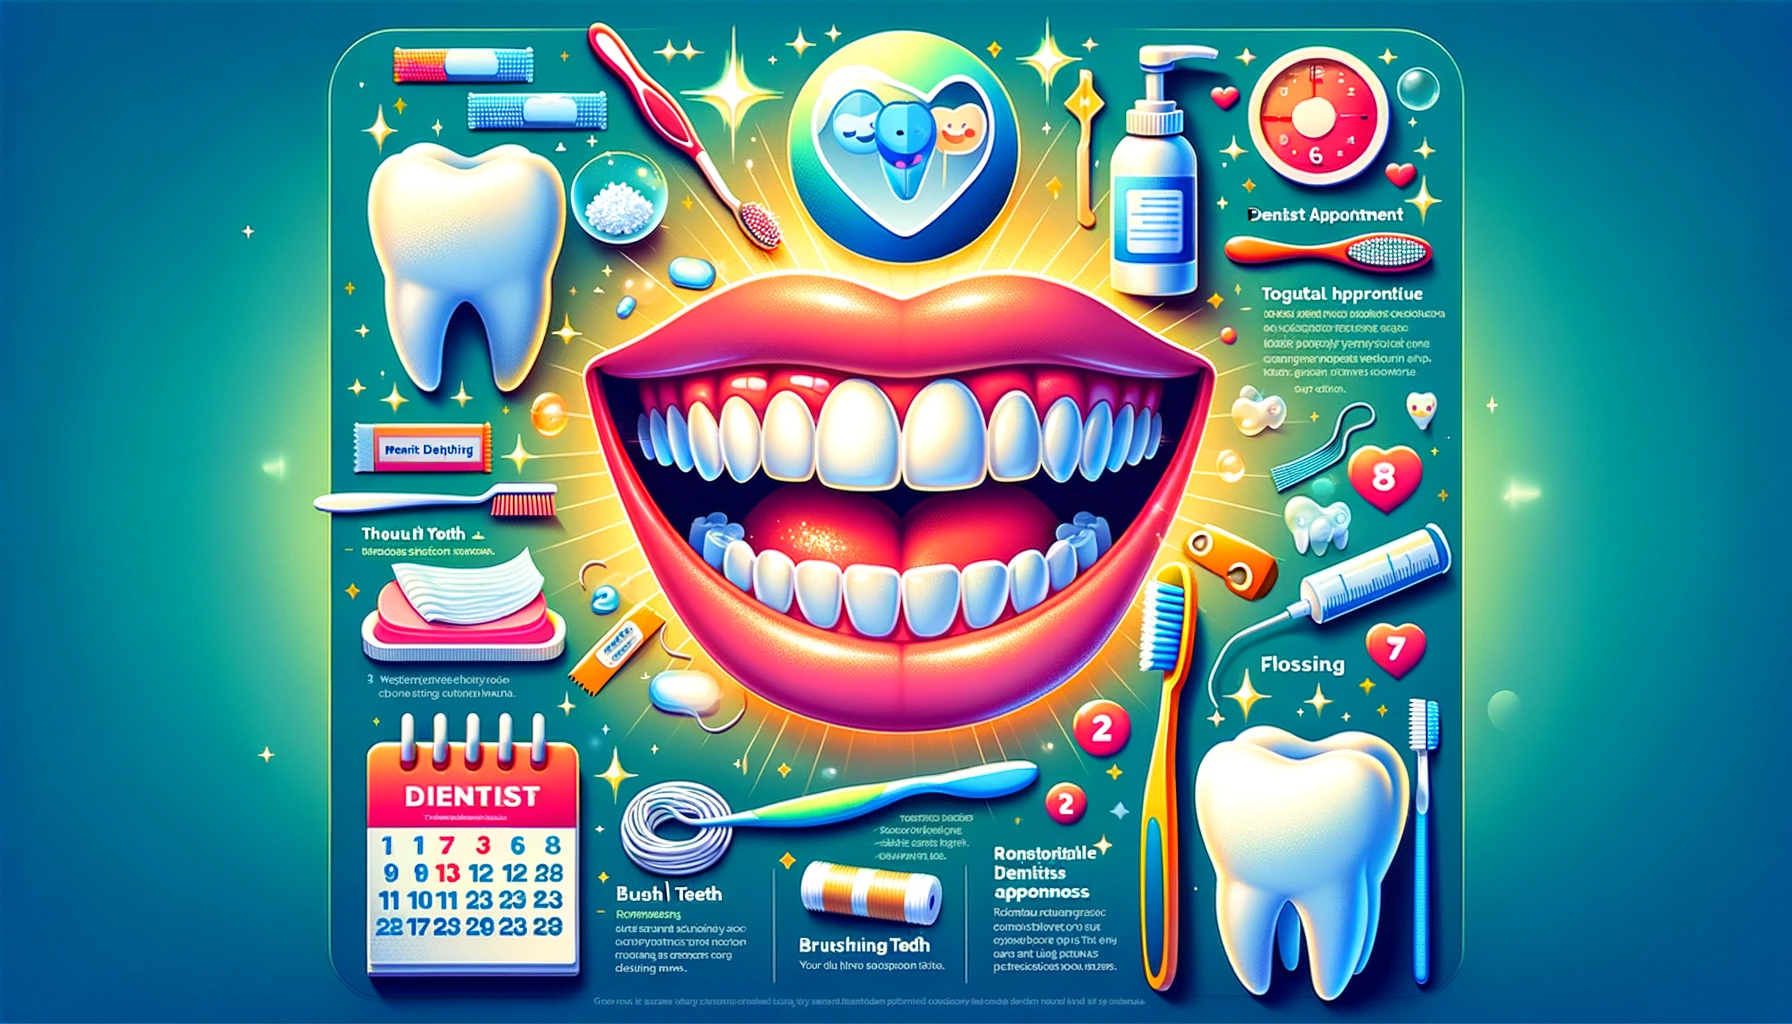 Infografikk viser børsting, tanntråd, og tannlegebesøk for munnhelse